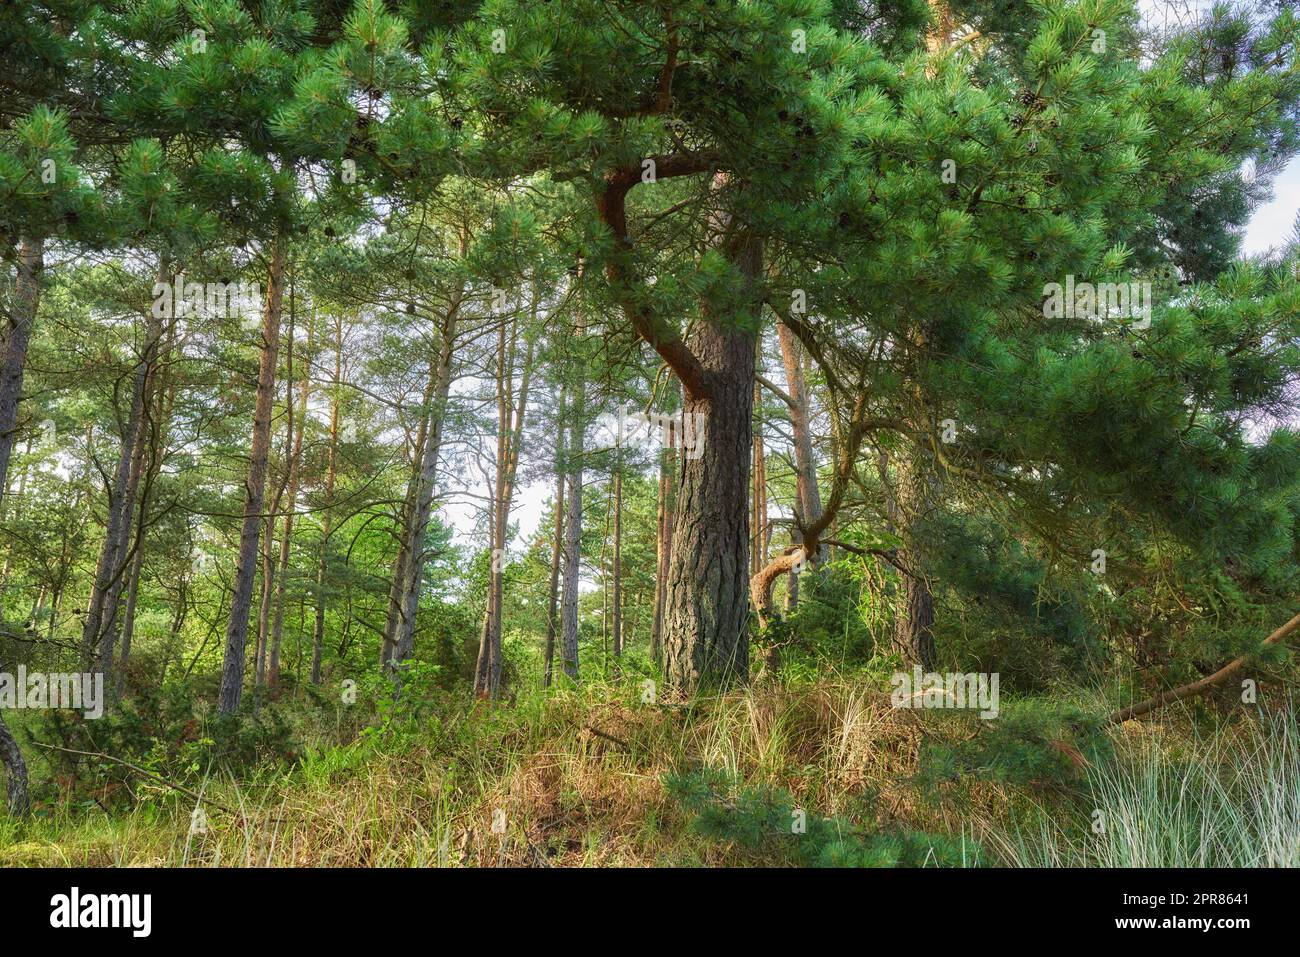 Grüner Wald mit üppigen Büschen und Pinienblättern. Schönheit in der Natur mit beruhigenden Blattmustern im Regenwald oder Dschungel. Ruhige, friedliche Atmosphäre im Freien, ungestörte Natur in Harmonie Stockfoto